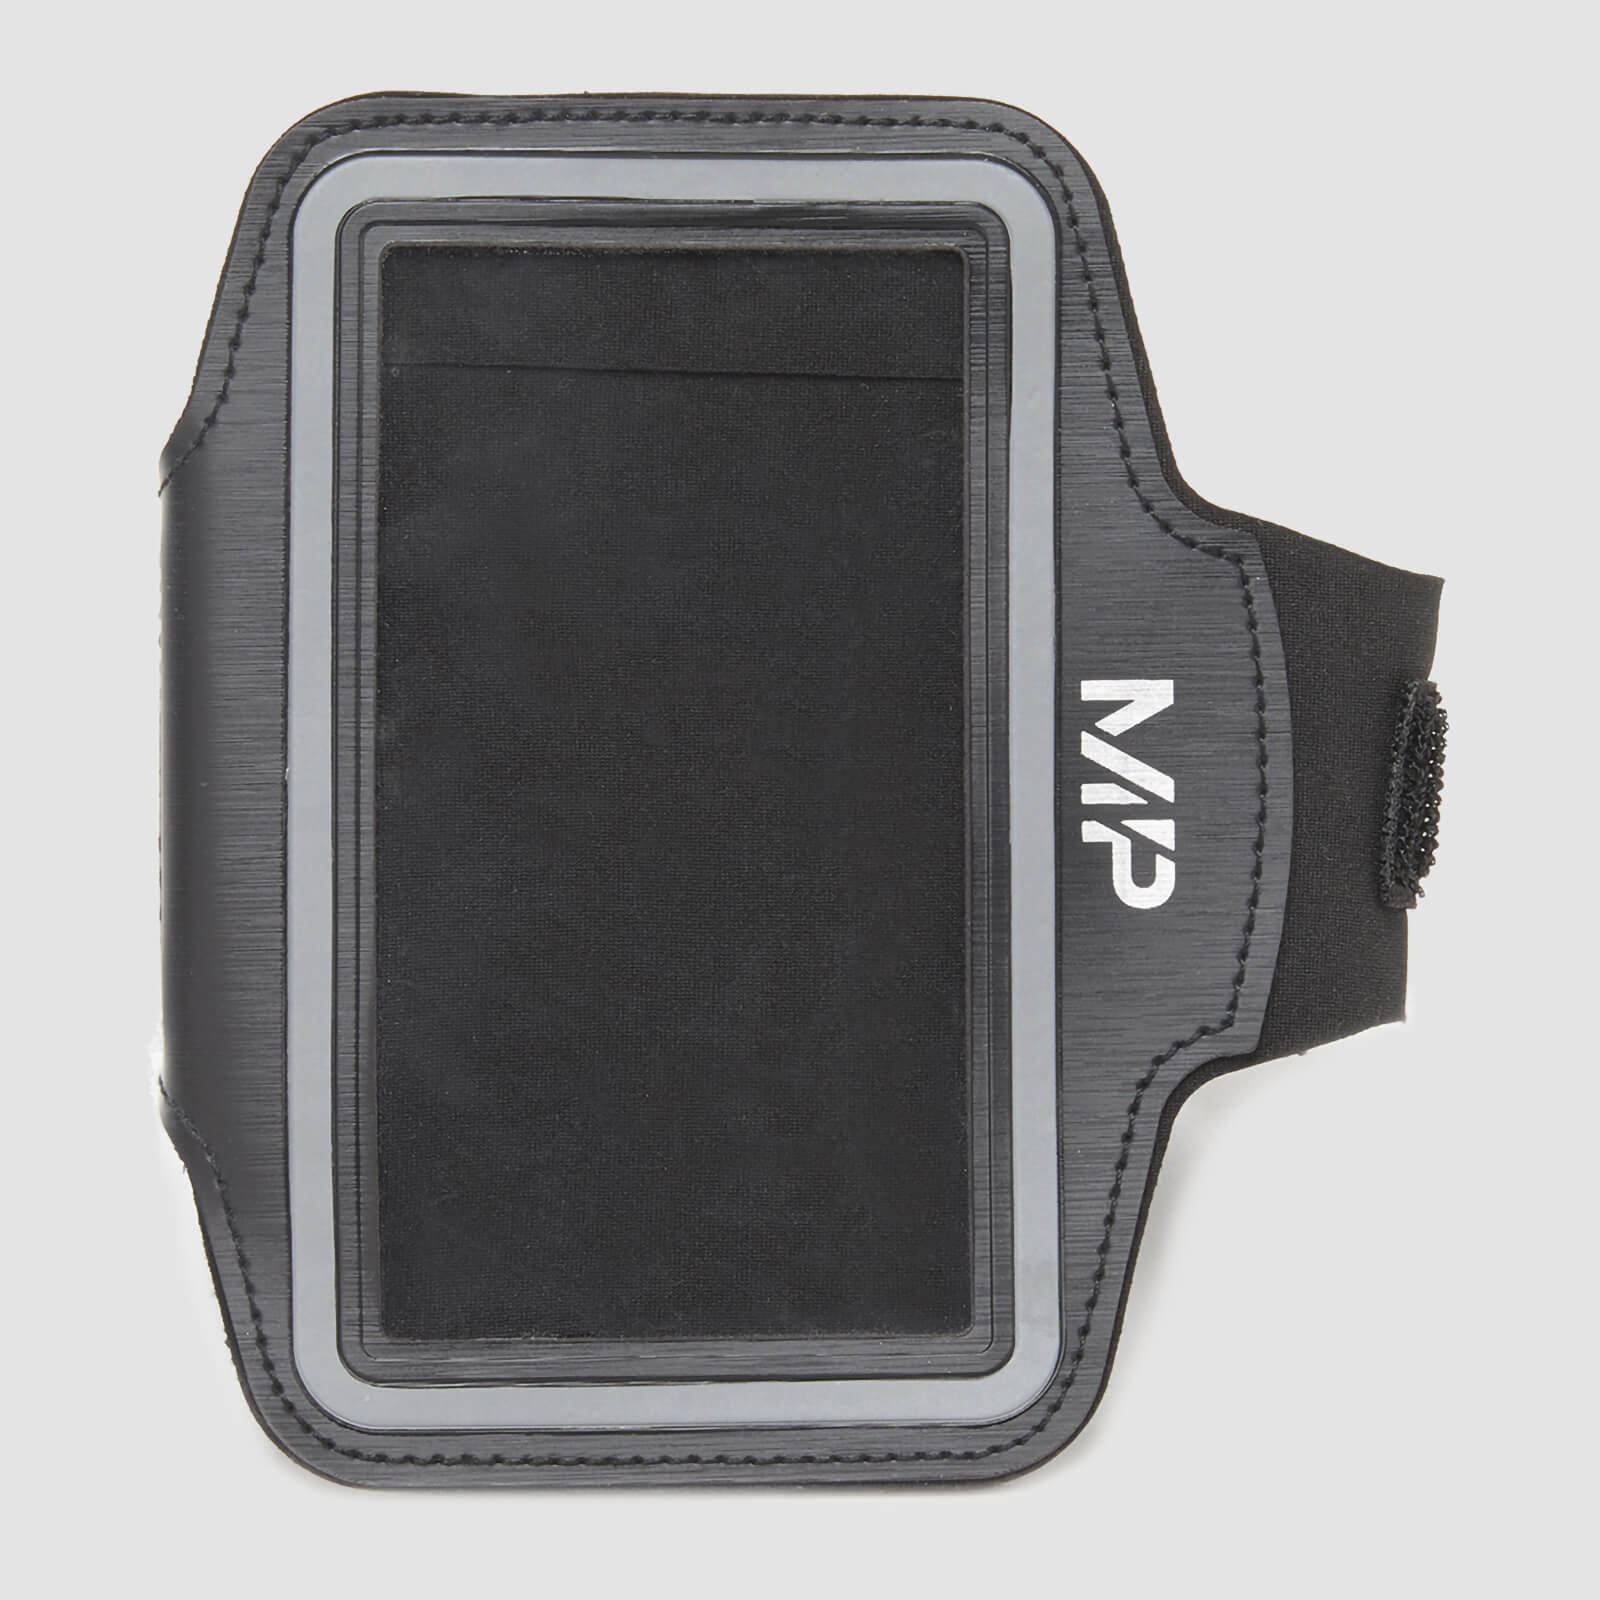 Лента за ръка за телефон във фитнеса Essentials - черно - Regular